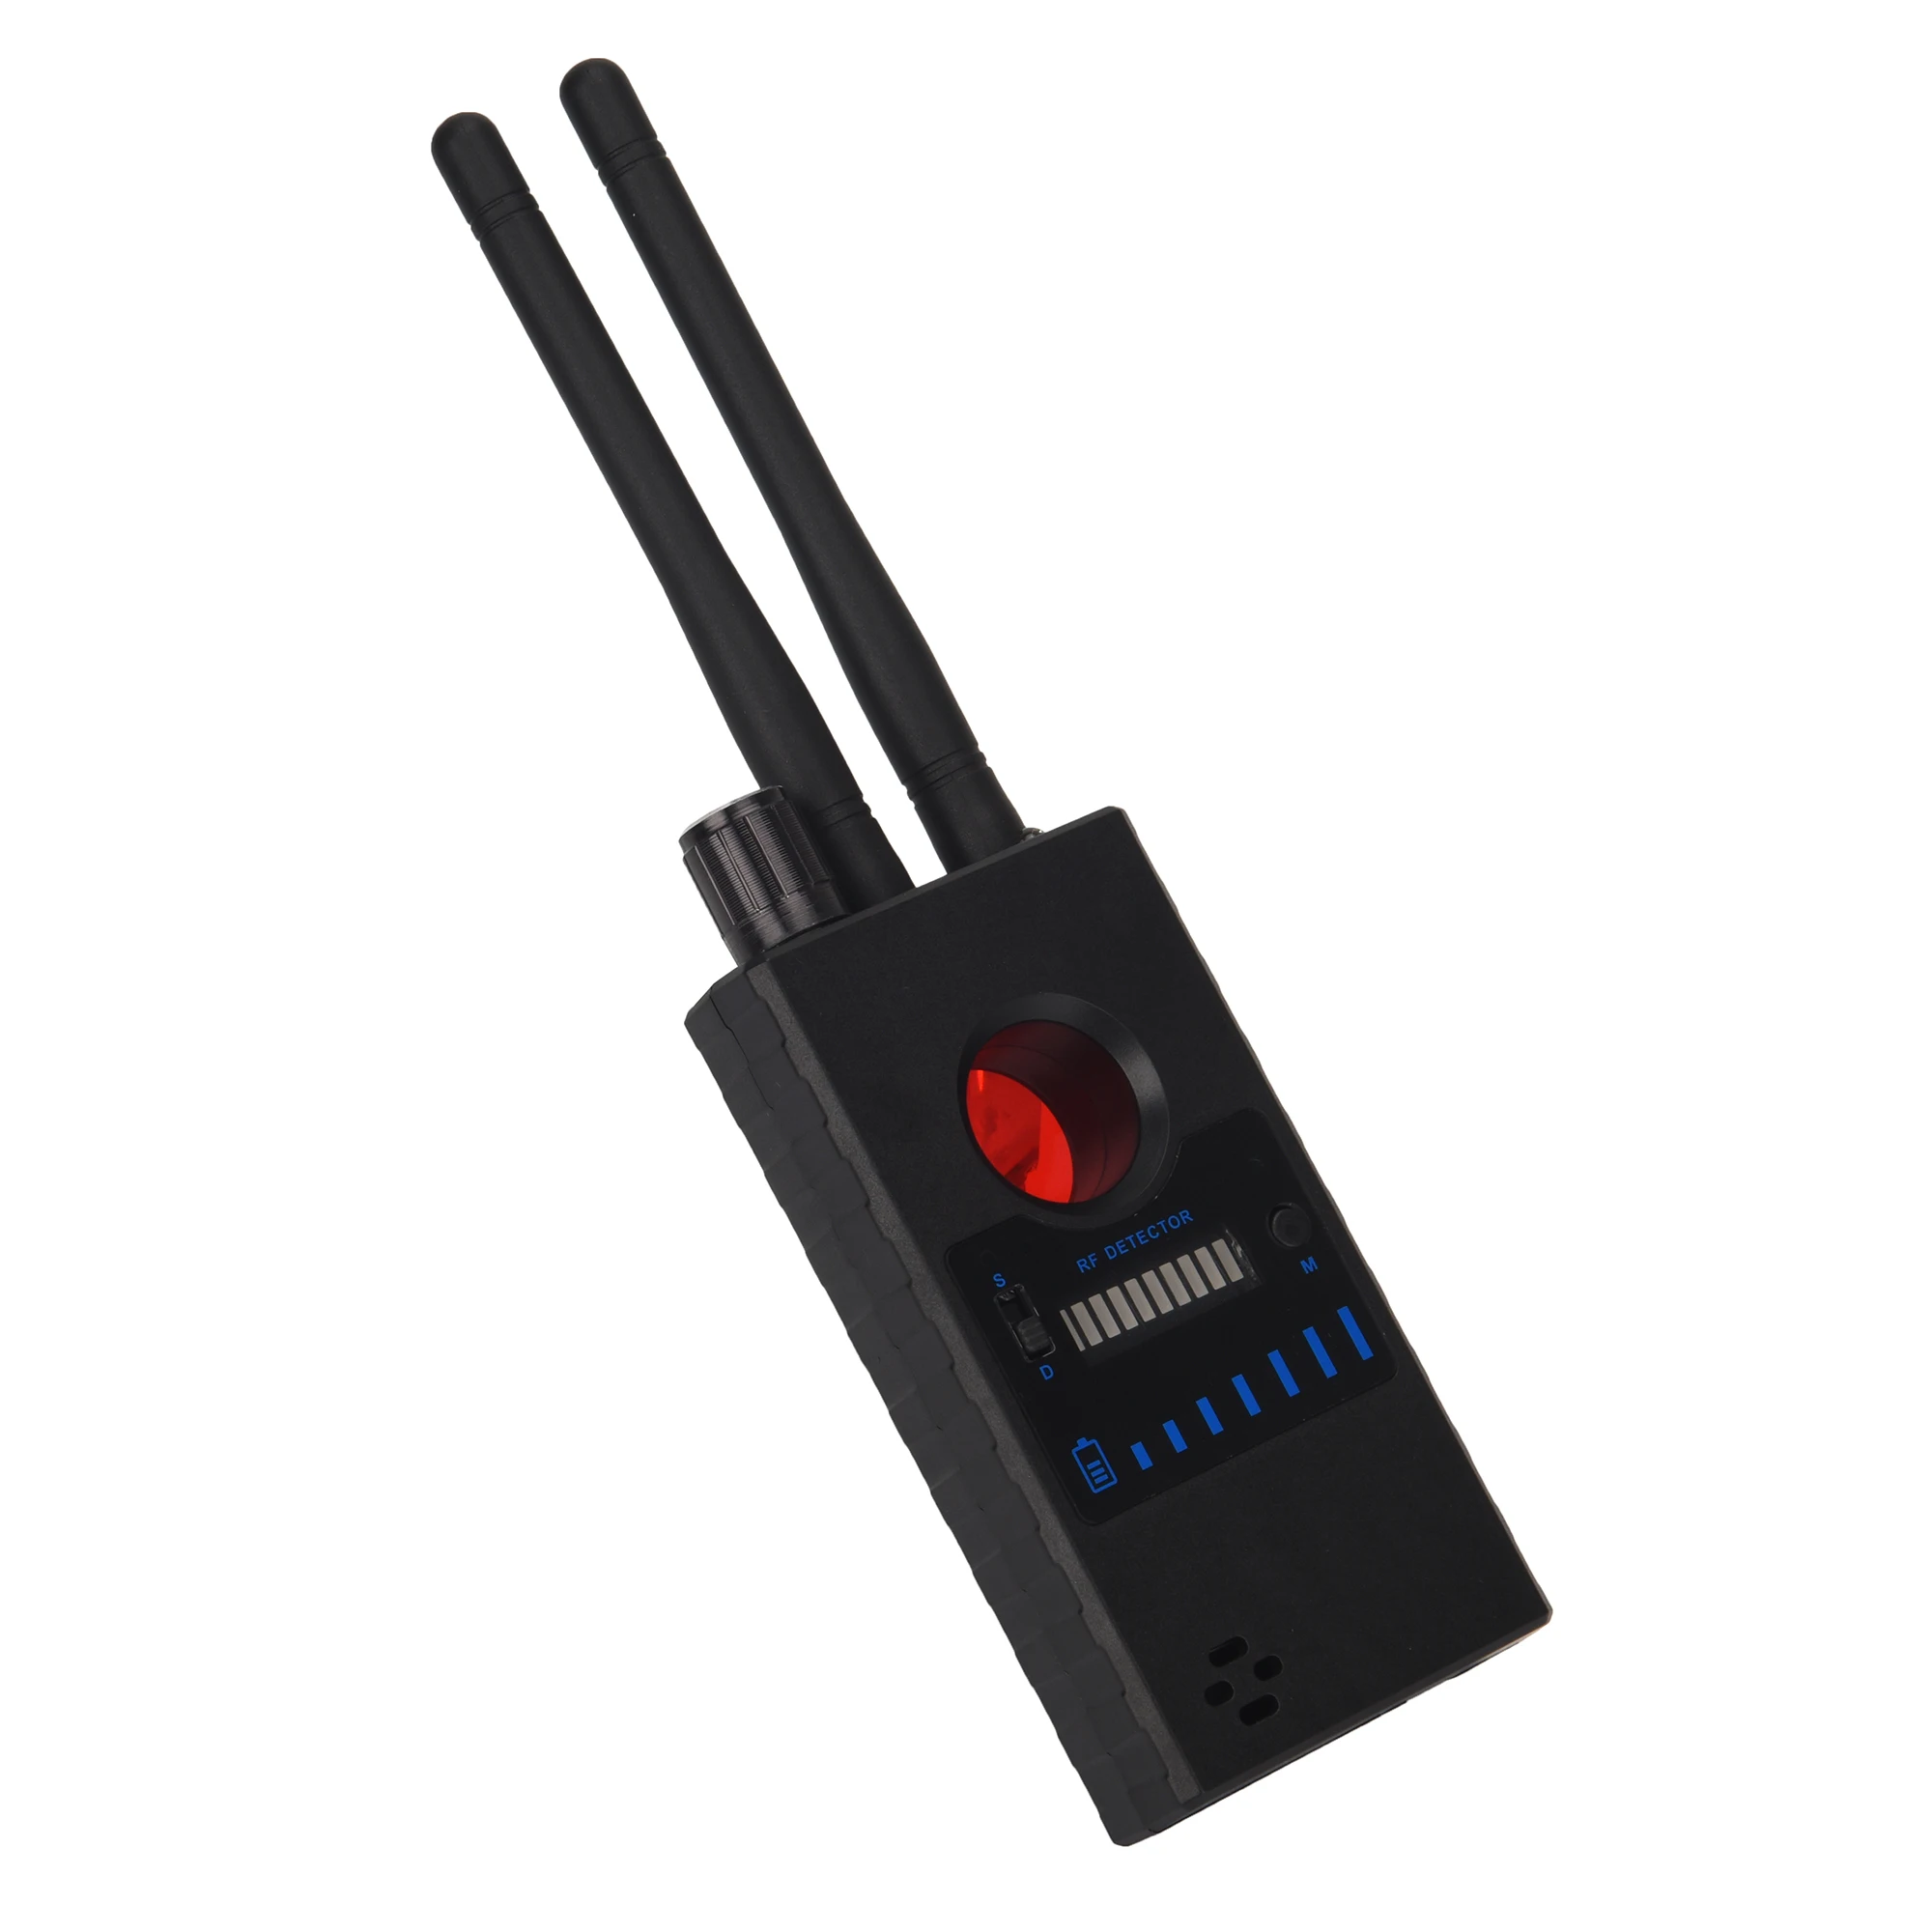 G528 многофункциональный детектор камеры GSM аудио искатель GPS сигнал радиочастотный трекер Обнаружение капельницы защита конфиденциальност... от AliExpress RU&CIS NEW